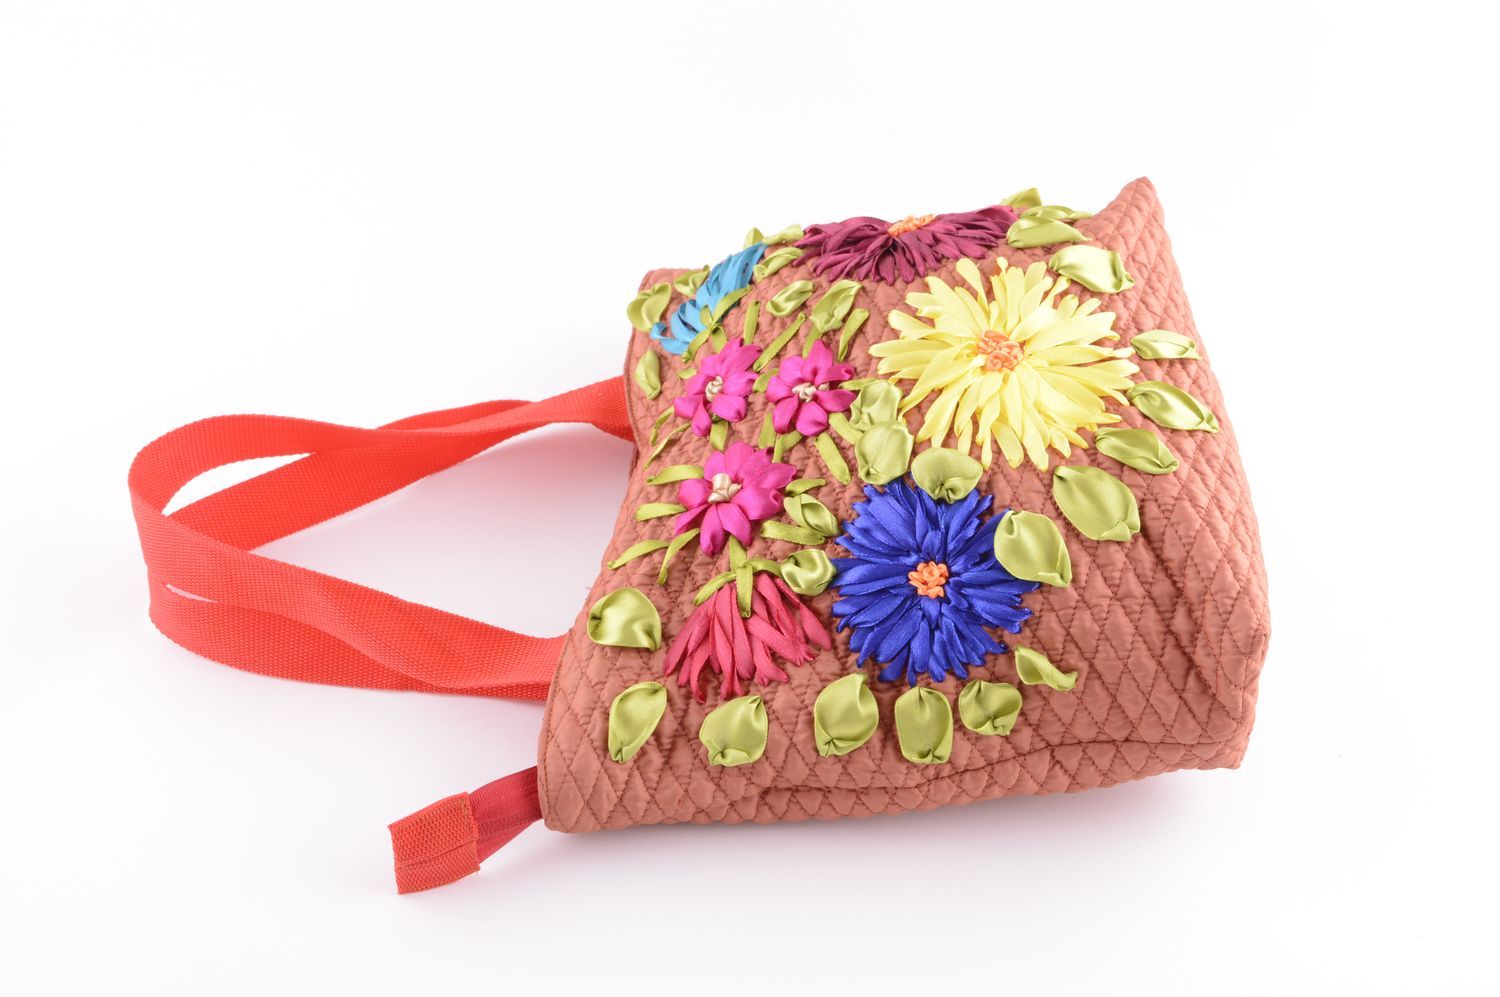 Handmade textile bag embroidered shoulder bag designer stylish bag gift photo 3